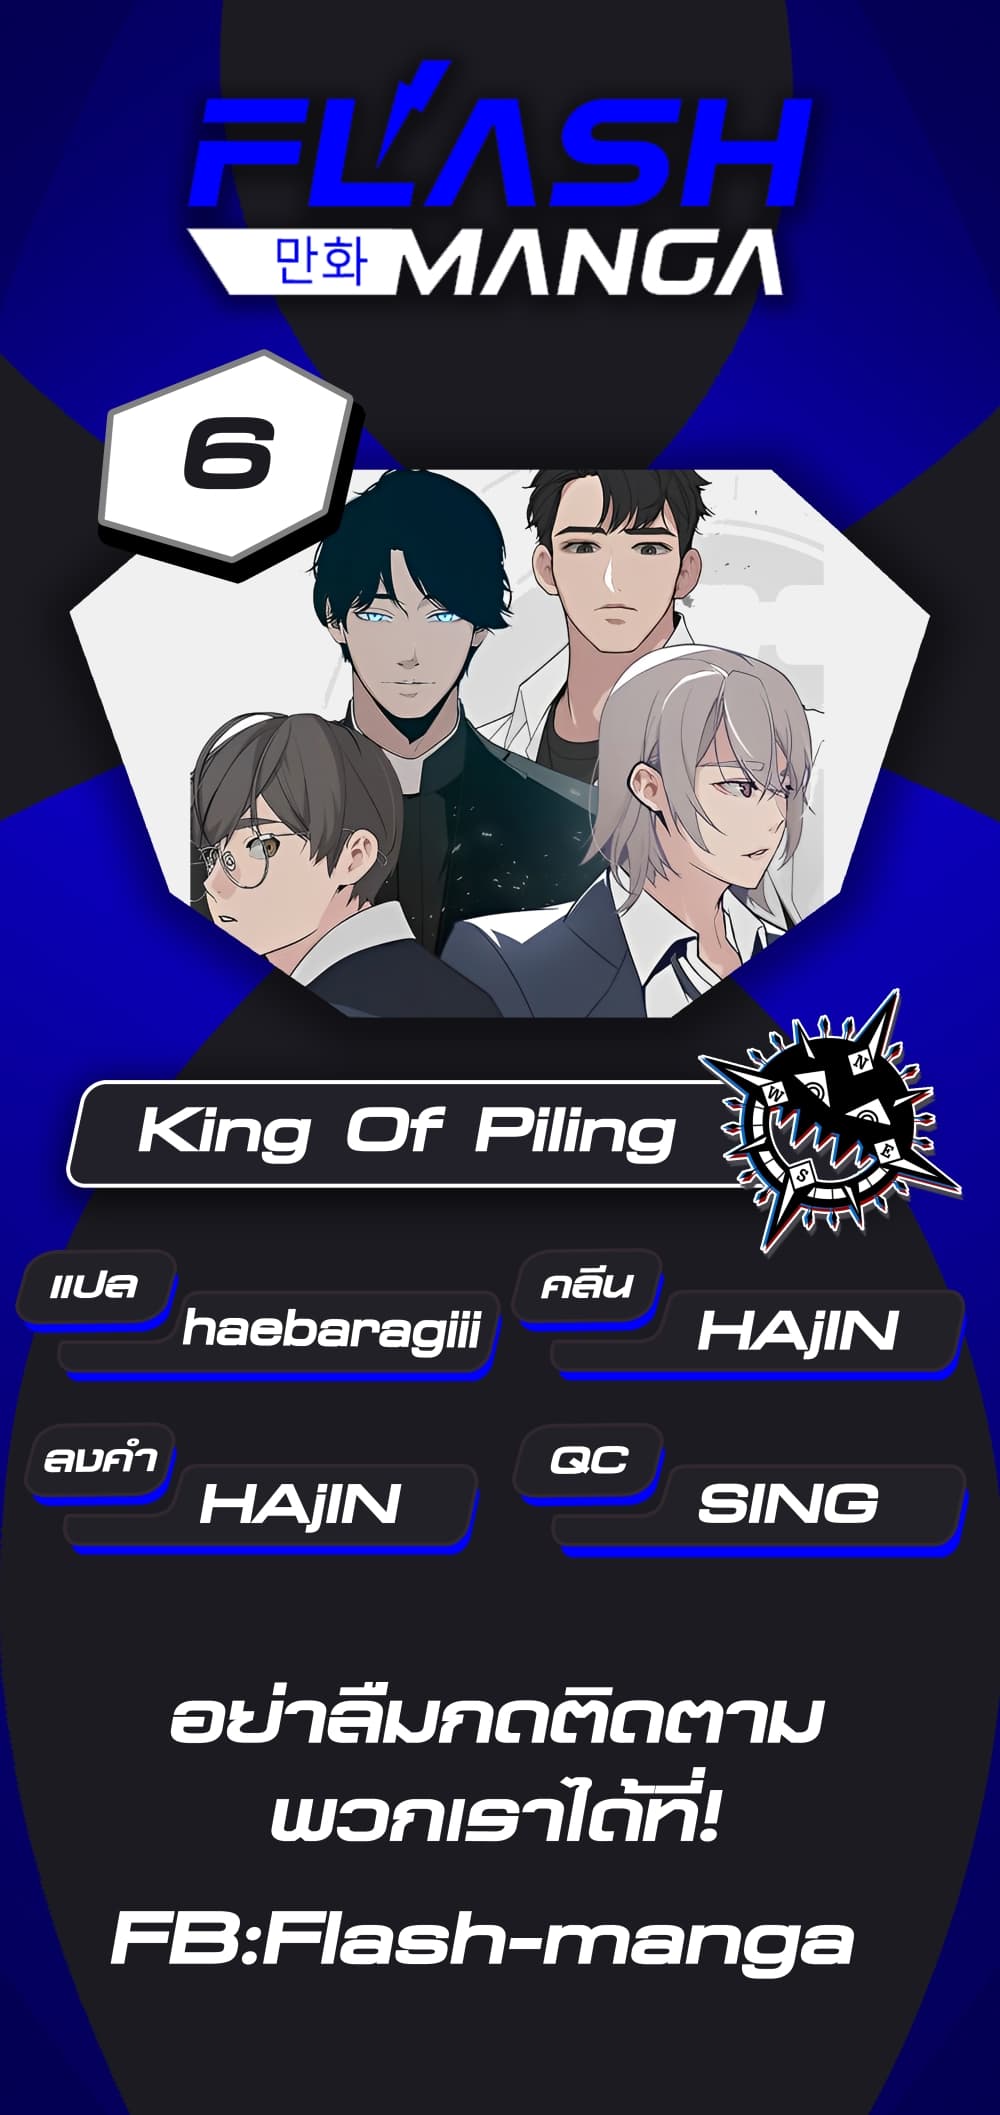 King of Piling 6-6